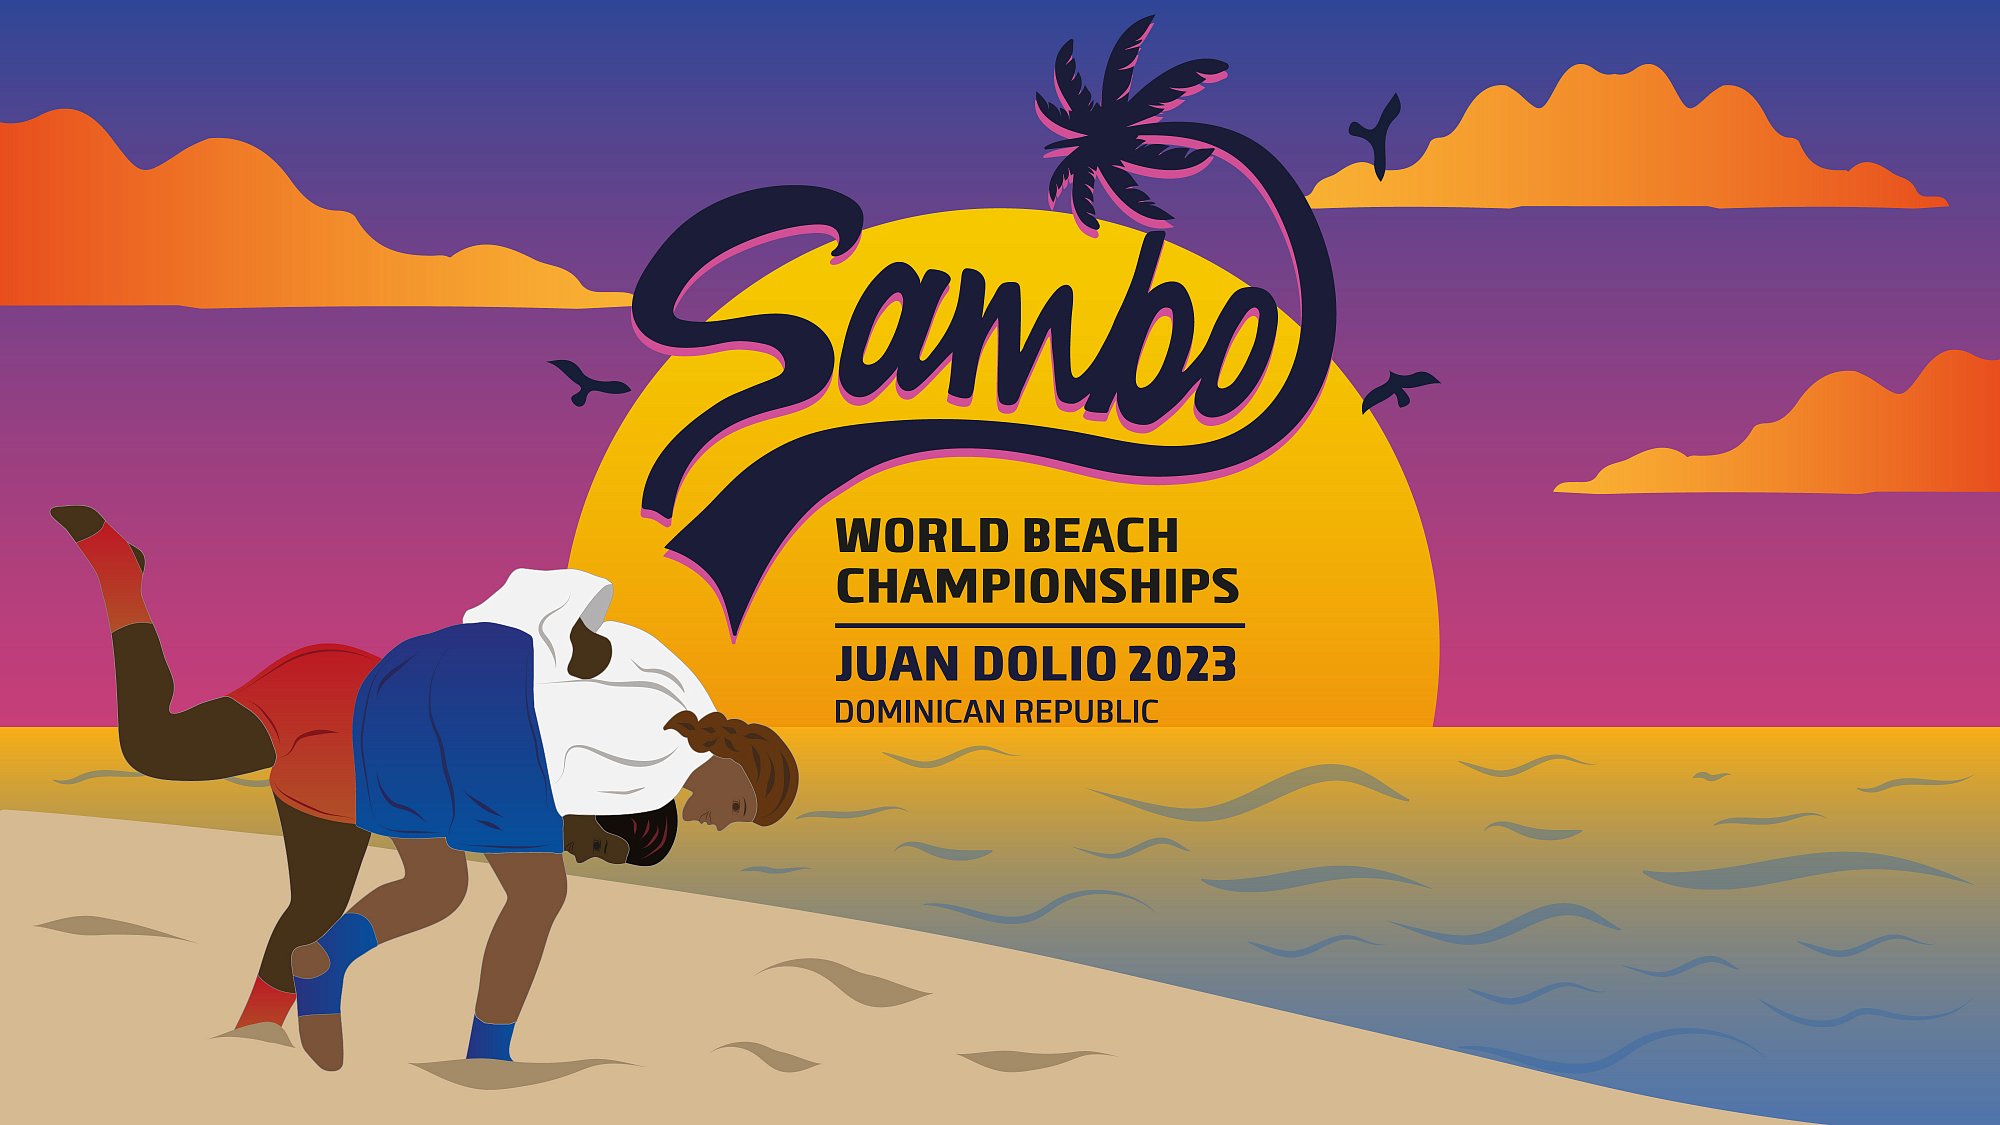 World Beach Sambo Championships 2023